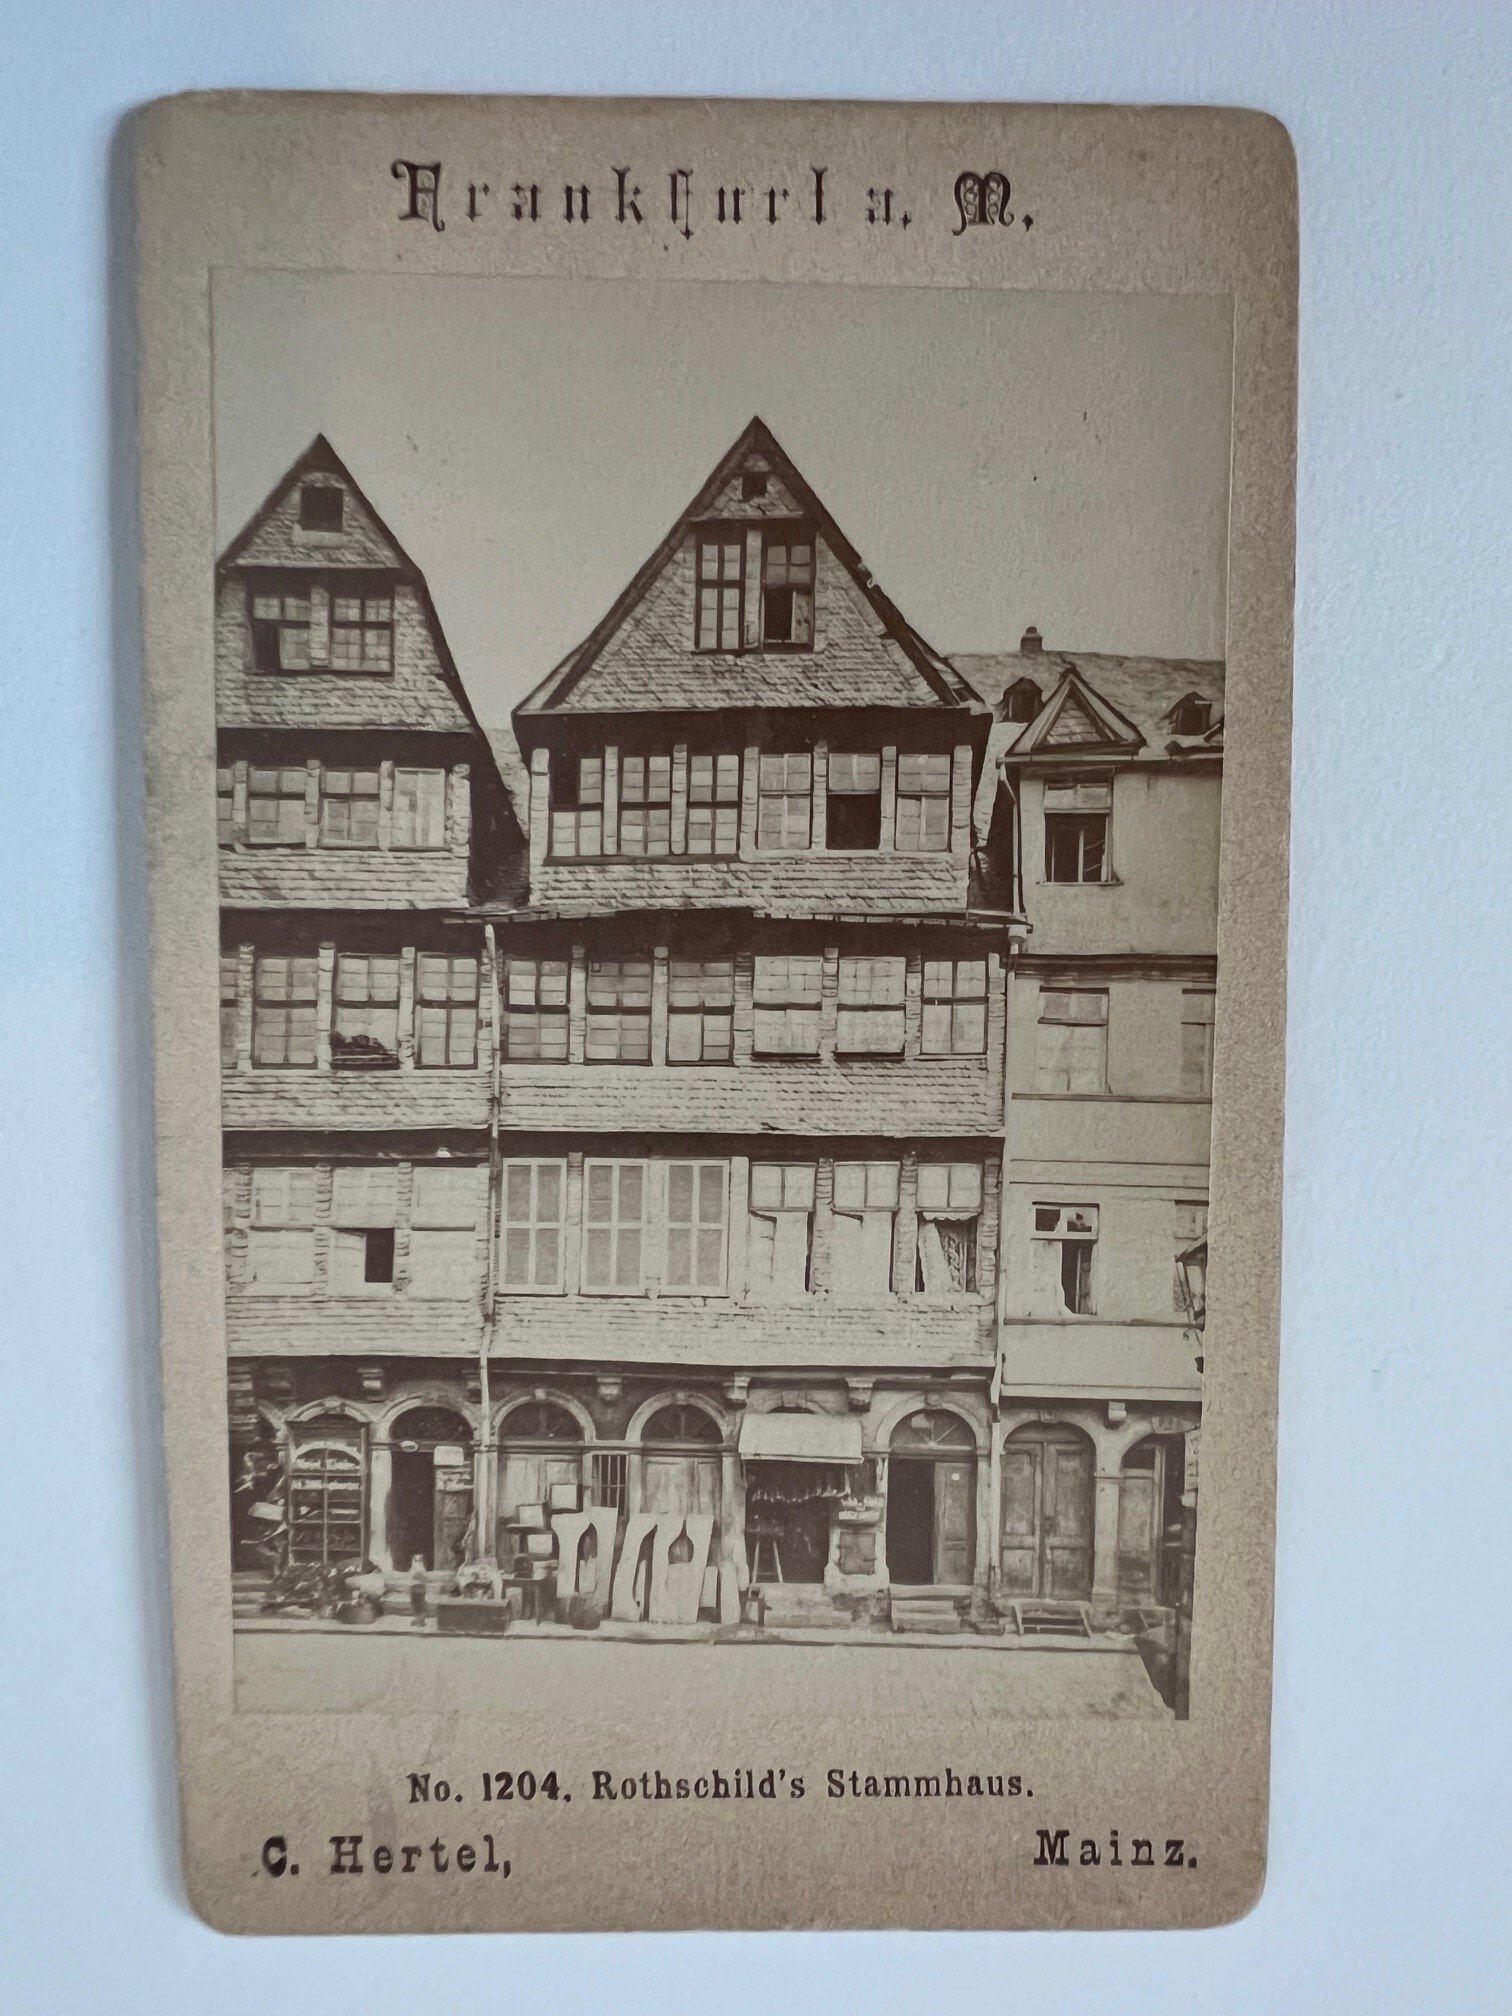 CdV, Carl Hertel, Frankfurt, Nr. 1204, Rothschild´s Stammhaus, ca. 1886. (Taunus-Rhein-Main - Regionalgeschichtliche Sammlung Dr. Stefan Naas CC BY-NC-SA)